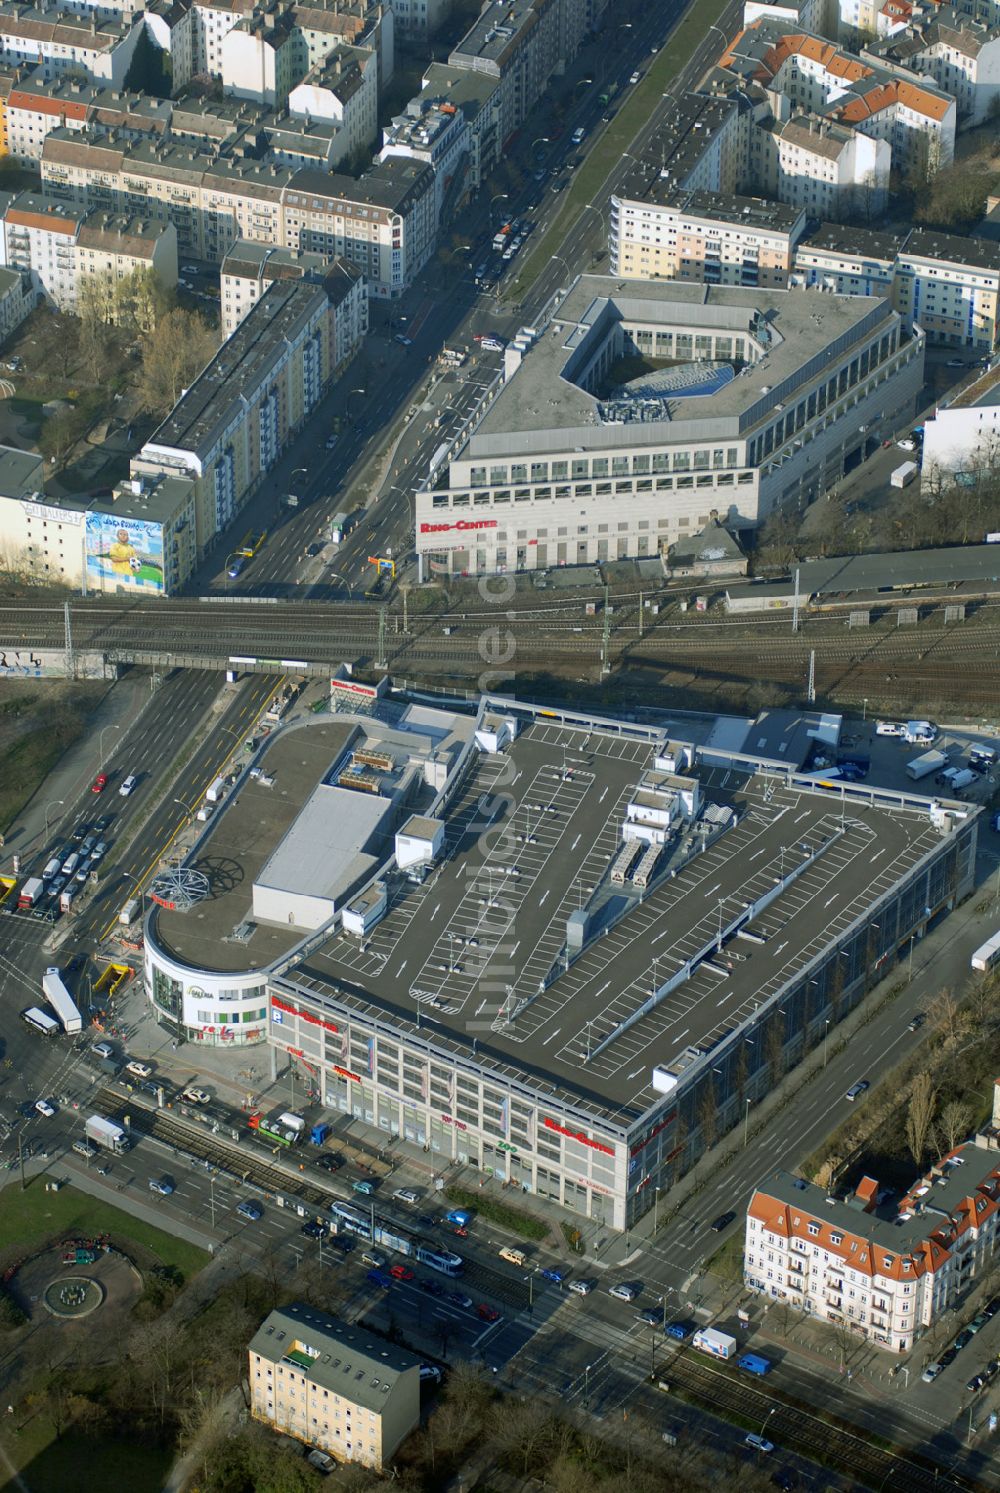 Luftbild Berlin - Das fertige Ringcenter 3 der ECE GmbH an der Frankfurter Allee in Berlin-Friedrichshain am Eröffnungstag